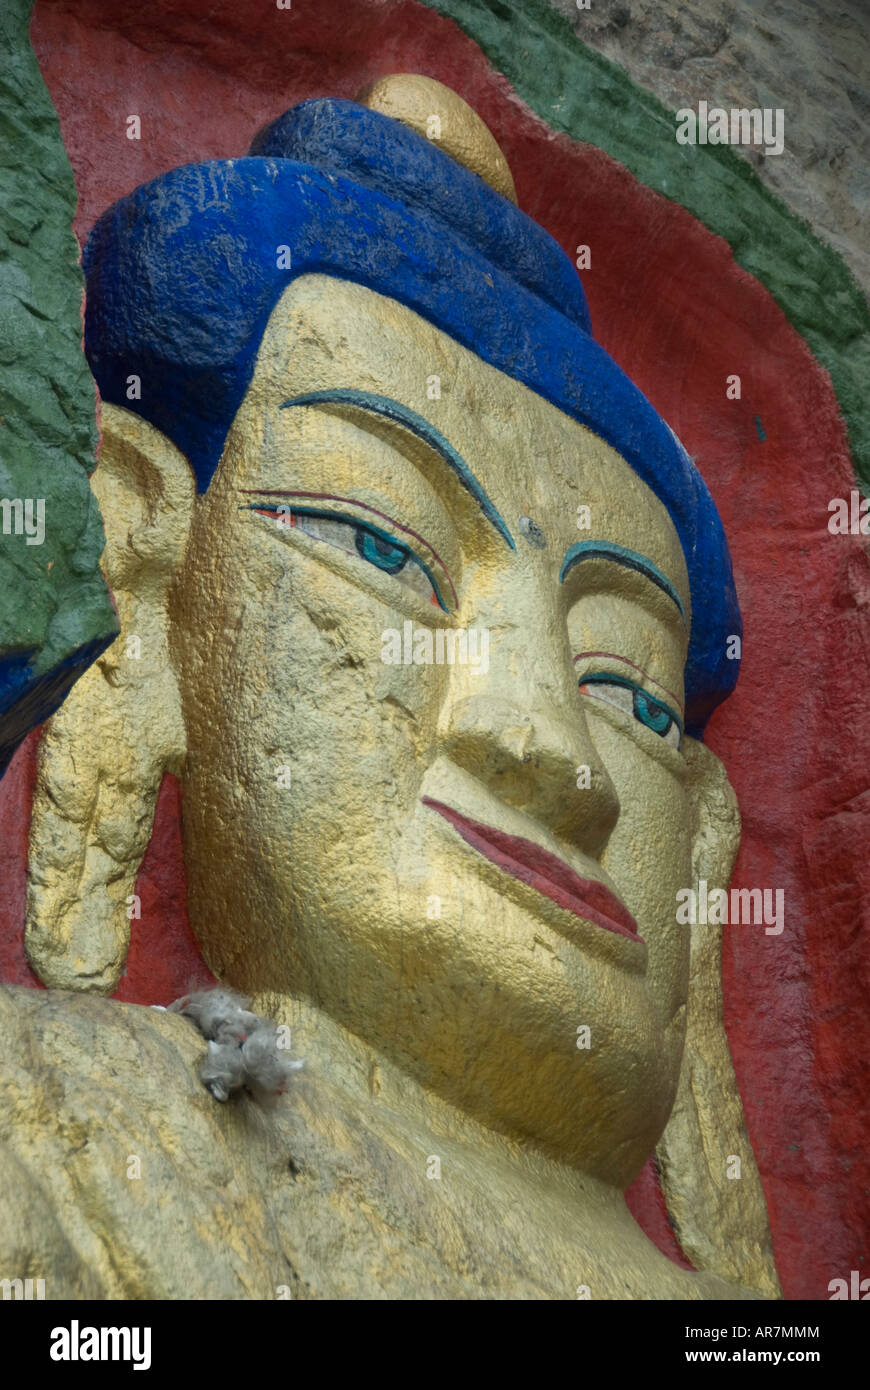 Il Nietang Buddha scolpito in una scogliera alla periferia di Lhasa, la più grande pietra incisa statua di Sakyamuni in Tibet. Foto Stock